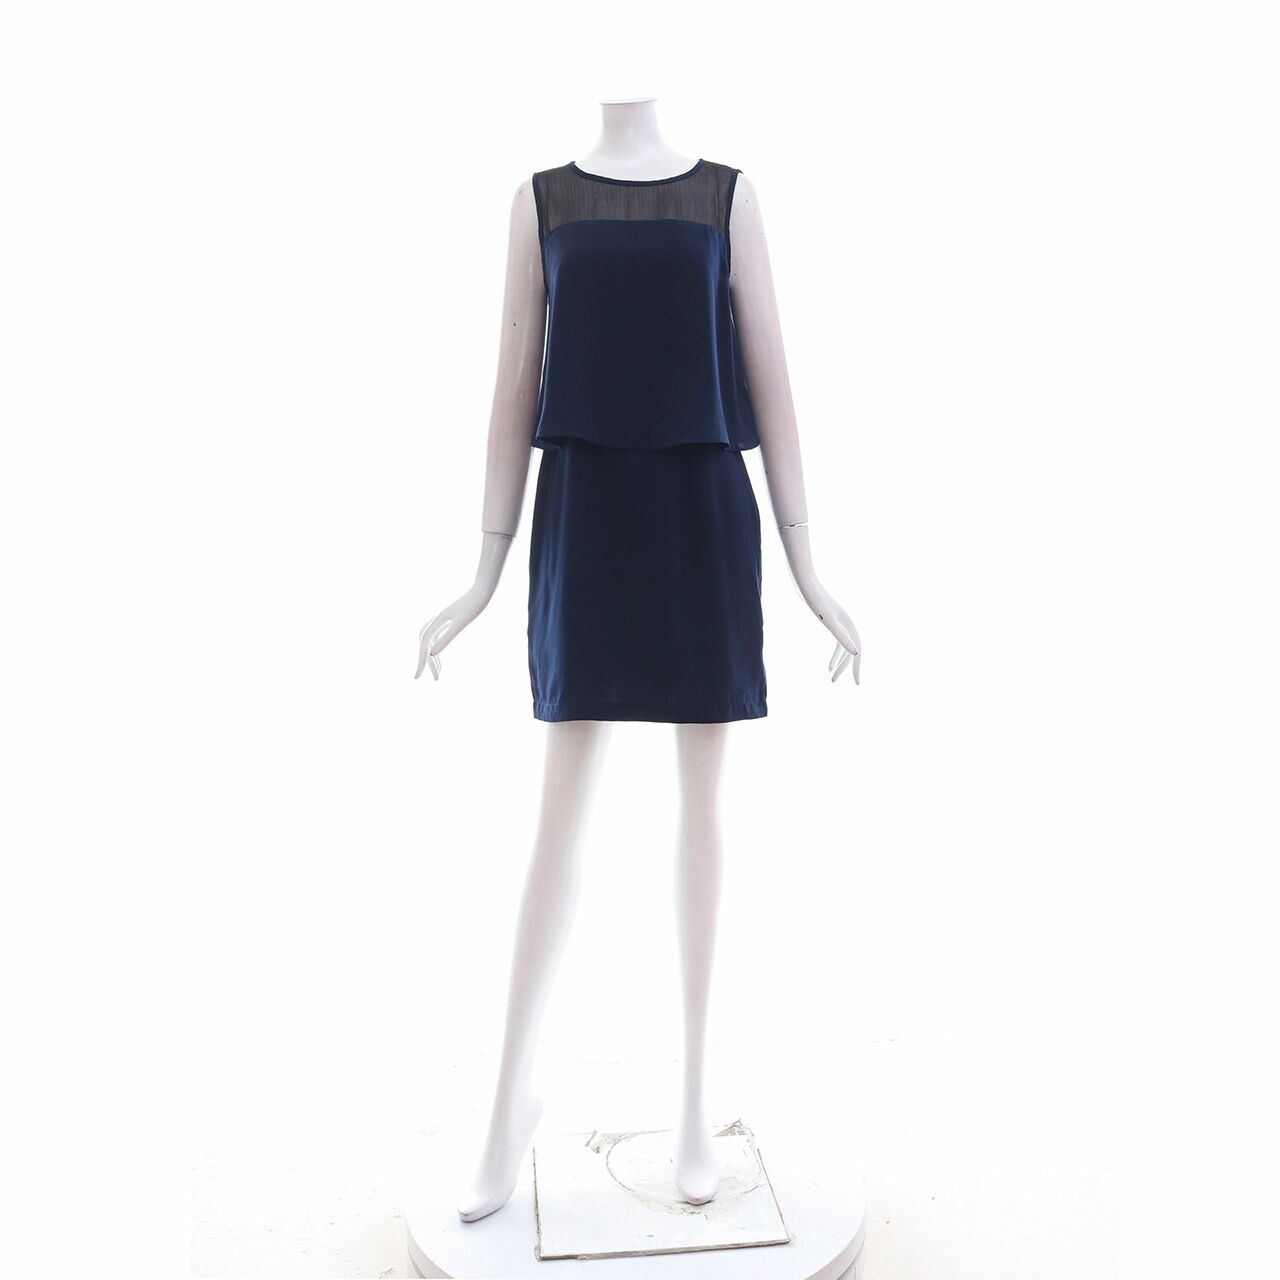 (X)SML Dark Blue Sheer Mini Dress